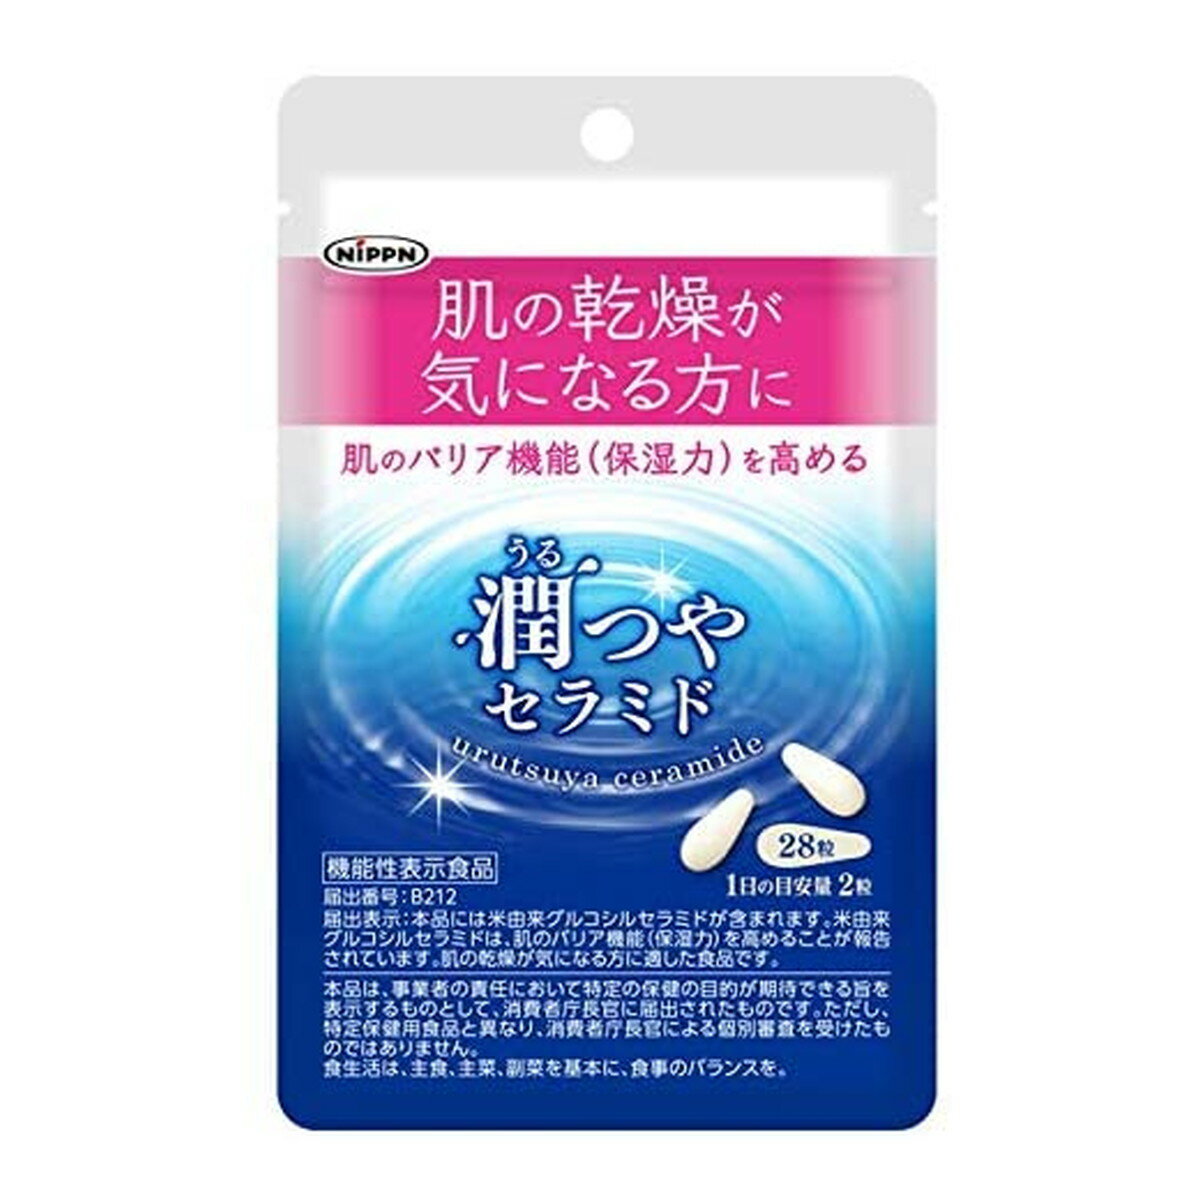 【送料込・まとめ買い×8個セット】日本製粉 ニップン 潤つやセラミド 28粒入 機能性表示食品